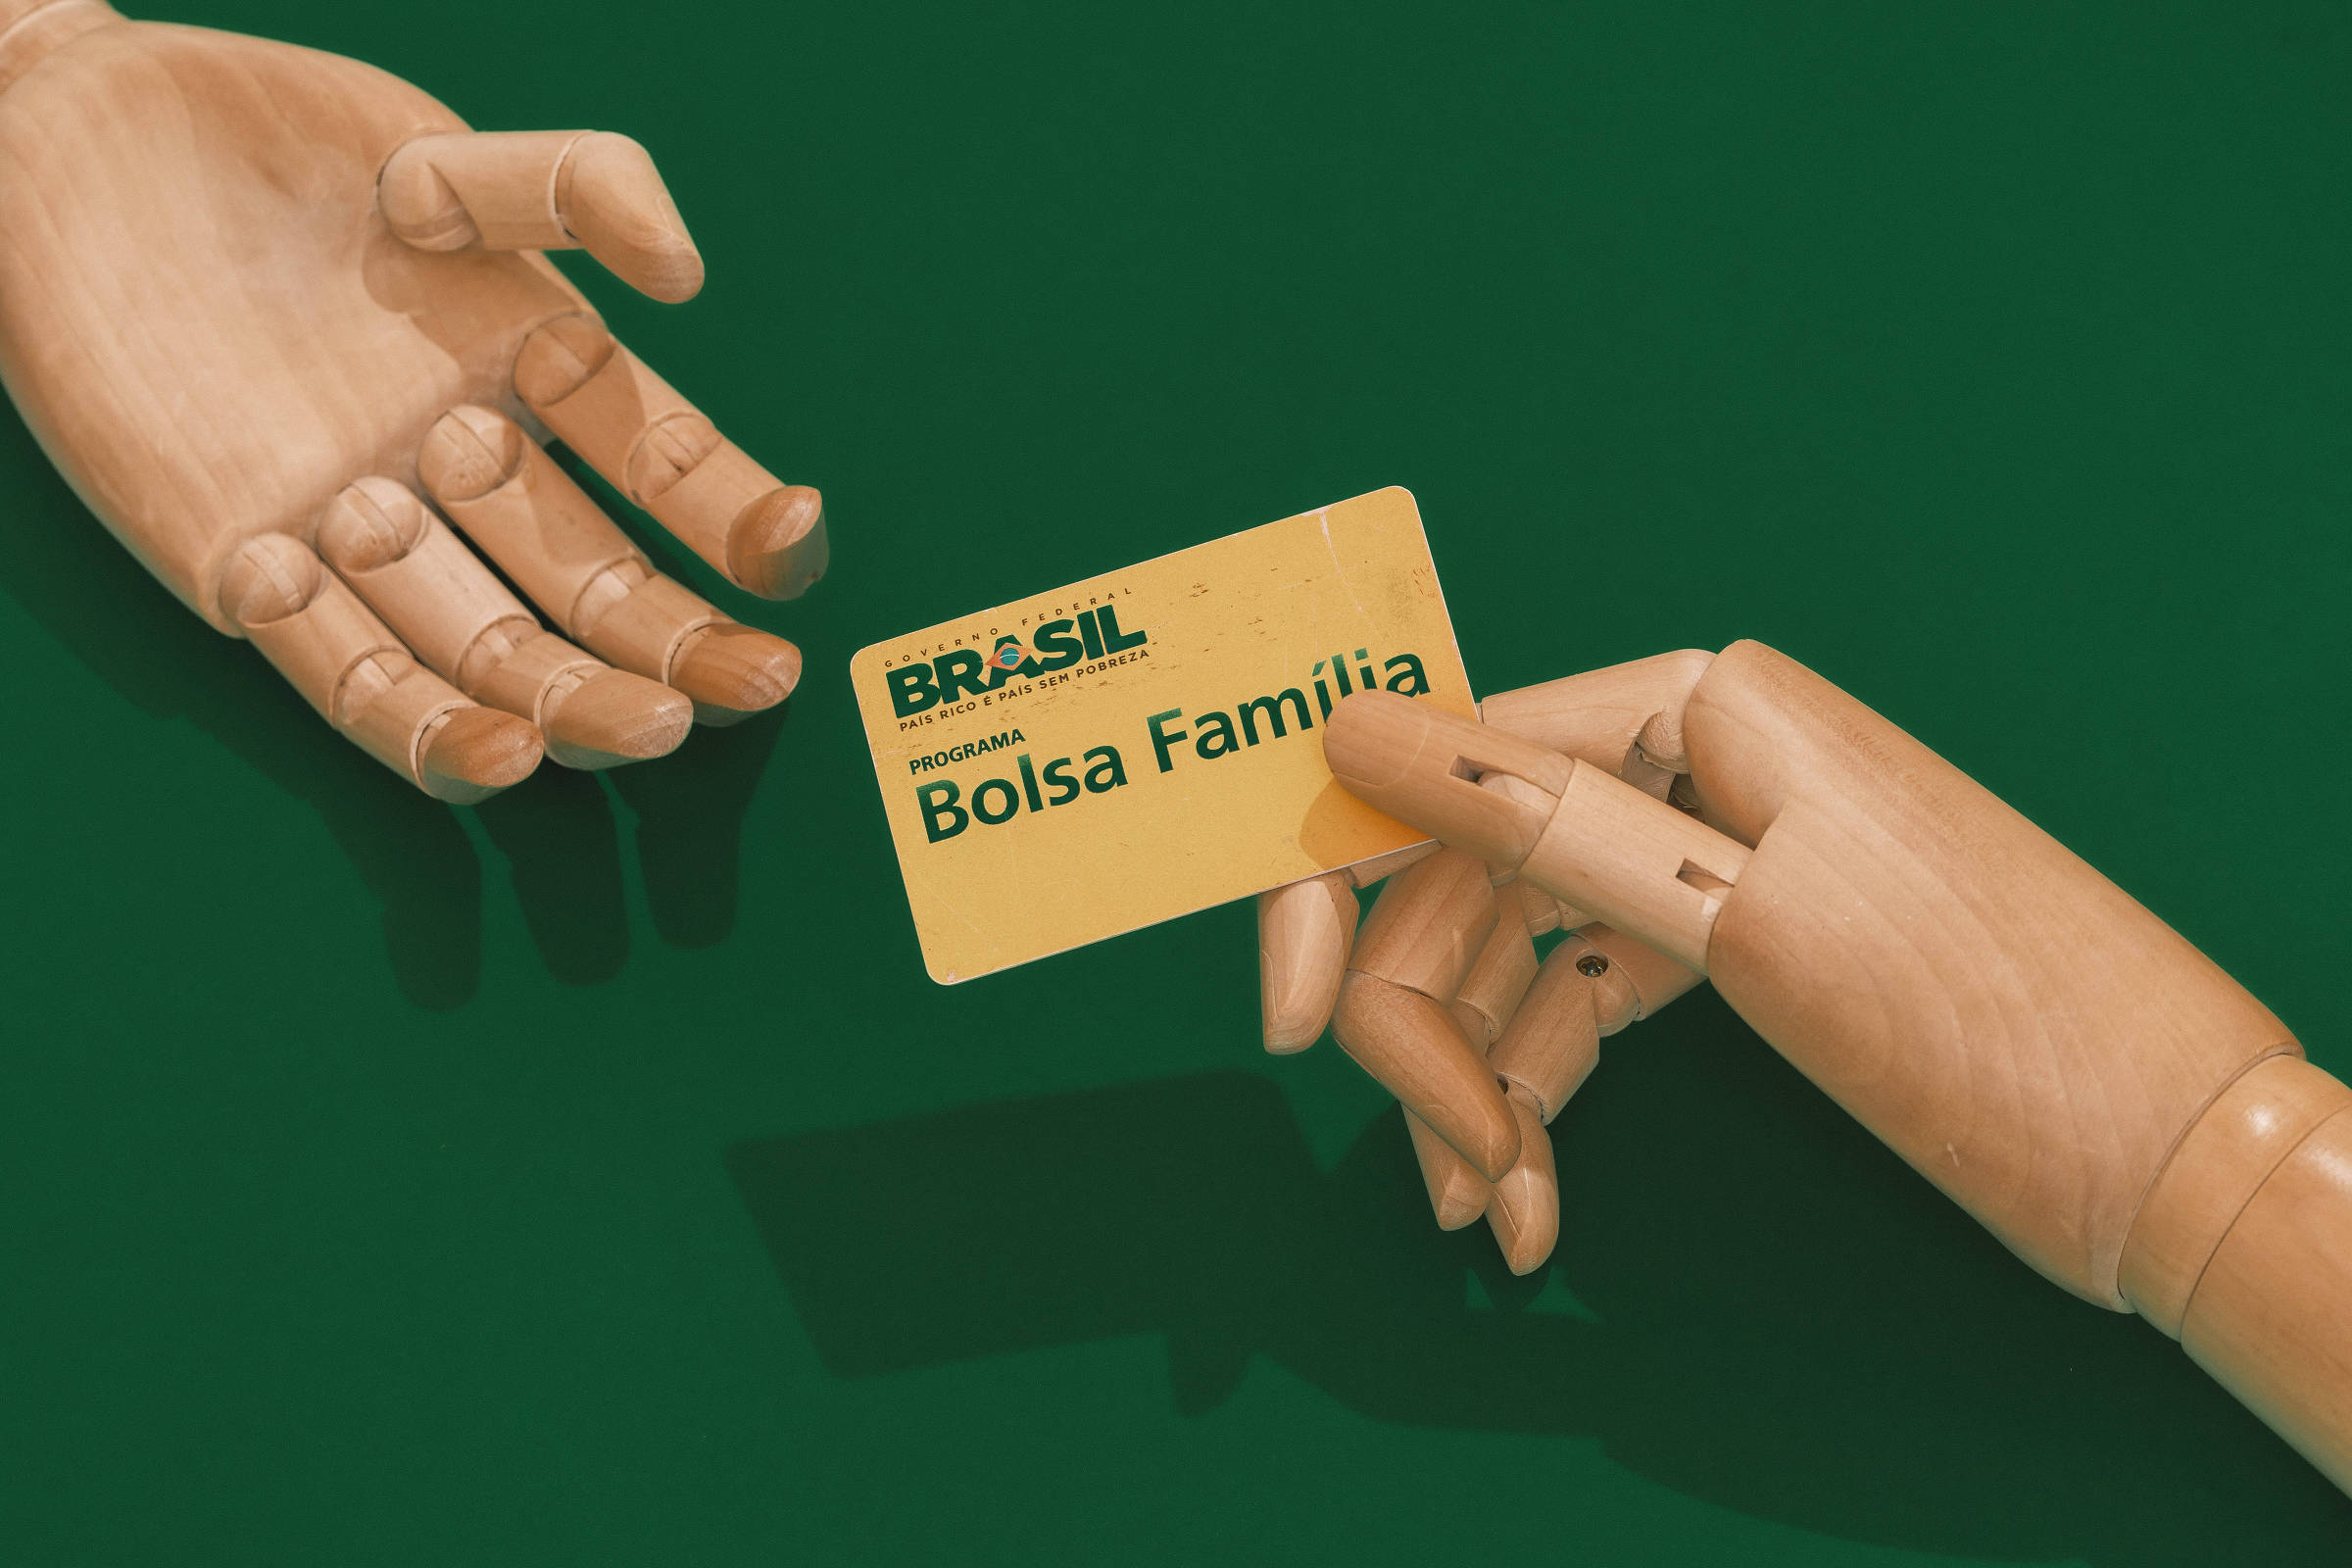 CAIXA - Se você é beneficiário do Bolsa Família, abra uma Poupança Caixa  Fácil e aproveite todas as vantagens. Você saca com cartão de débito, não  precisa retirar o benefício todo de